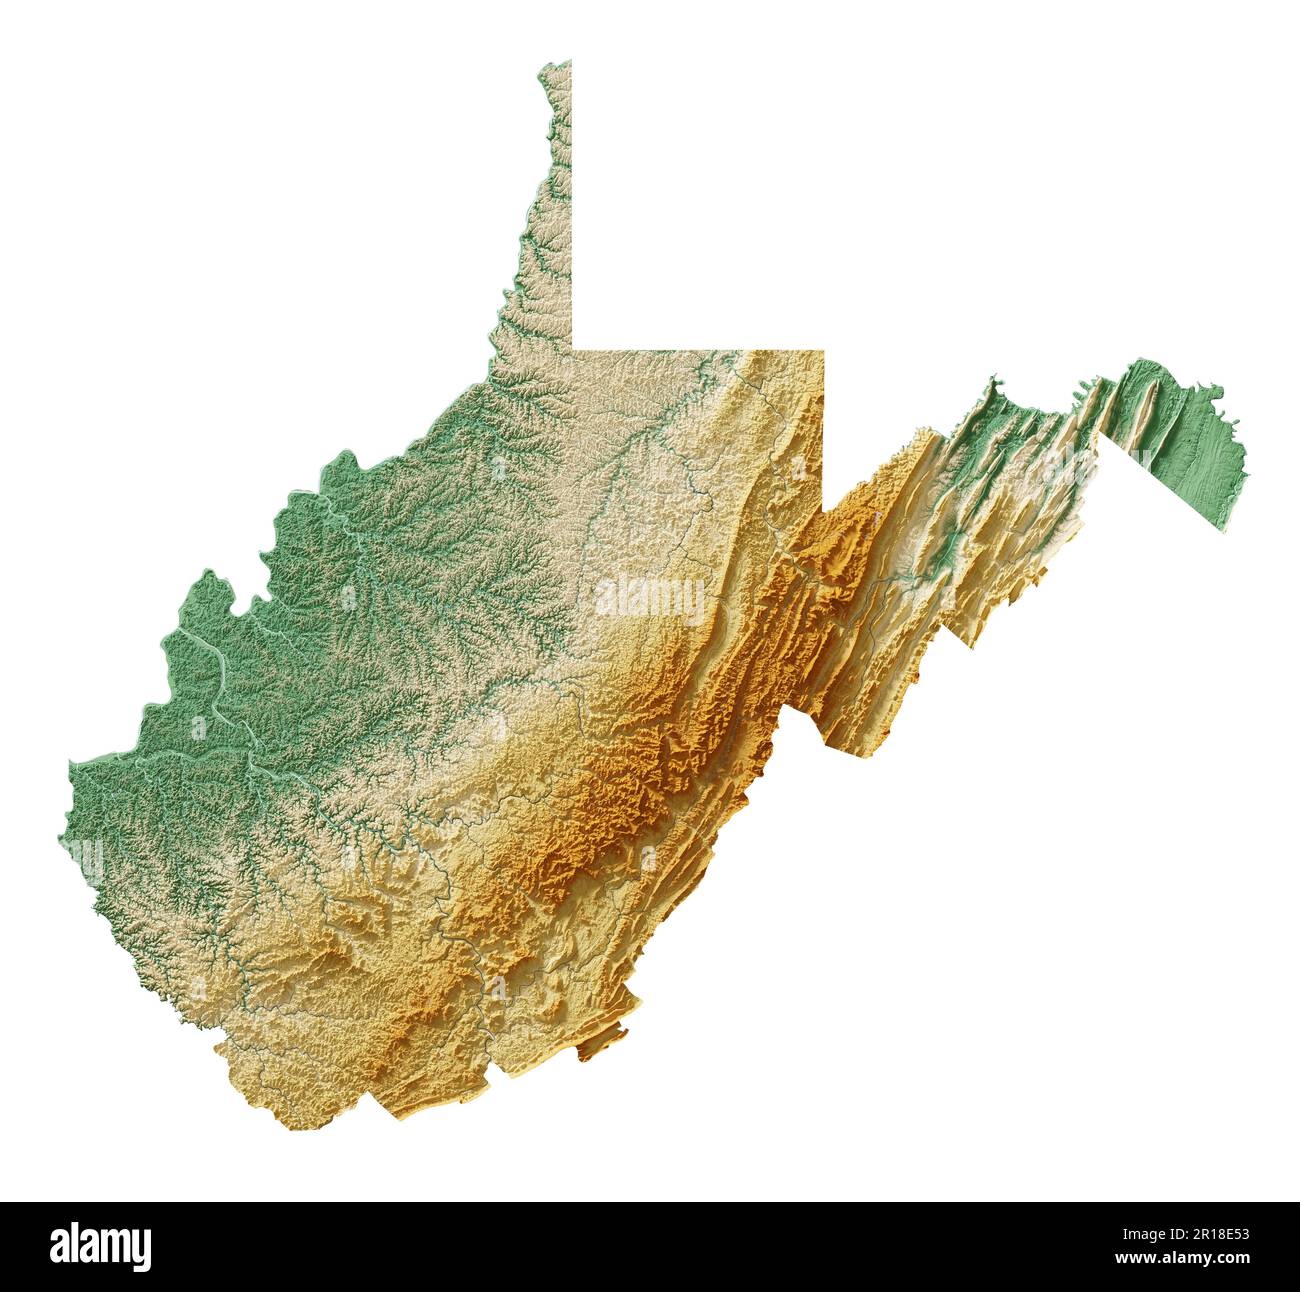 Stato degli Stati Uniti della Virginia Occidentale. Rendering 3D dettagliato di una mappa in rilievo ombreggiata con fiumi e laghi. Colorato dall'elevazione. Creato con i dati satellitari. Foto Stock